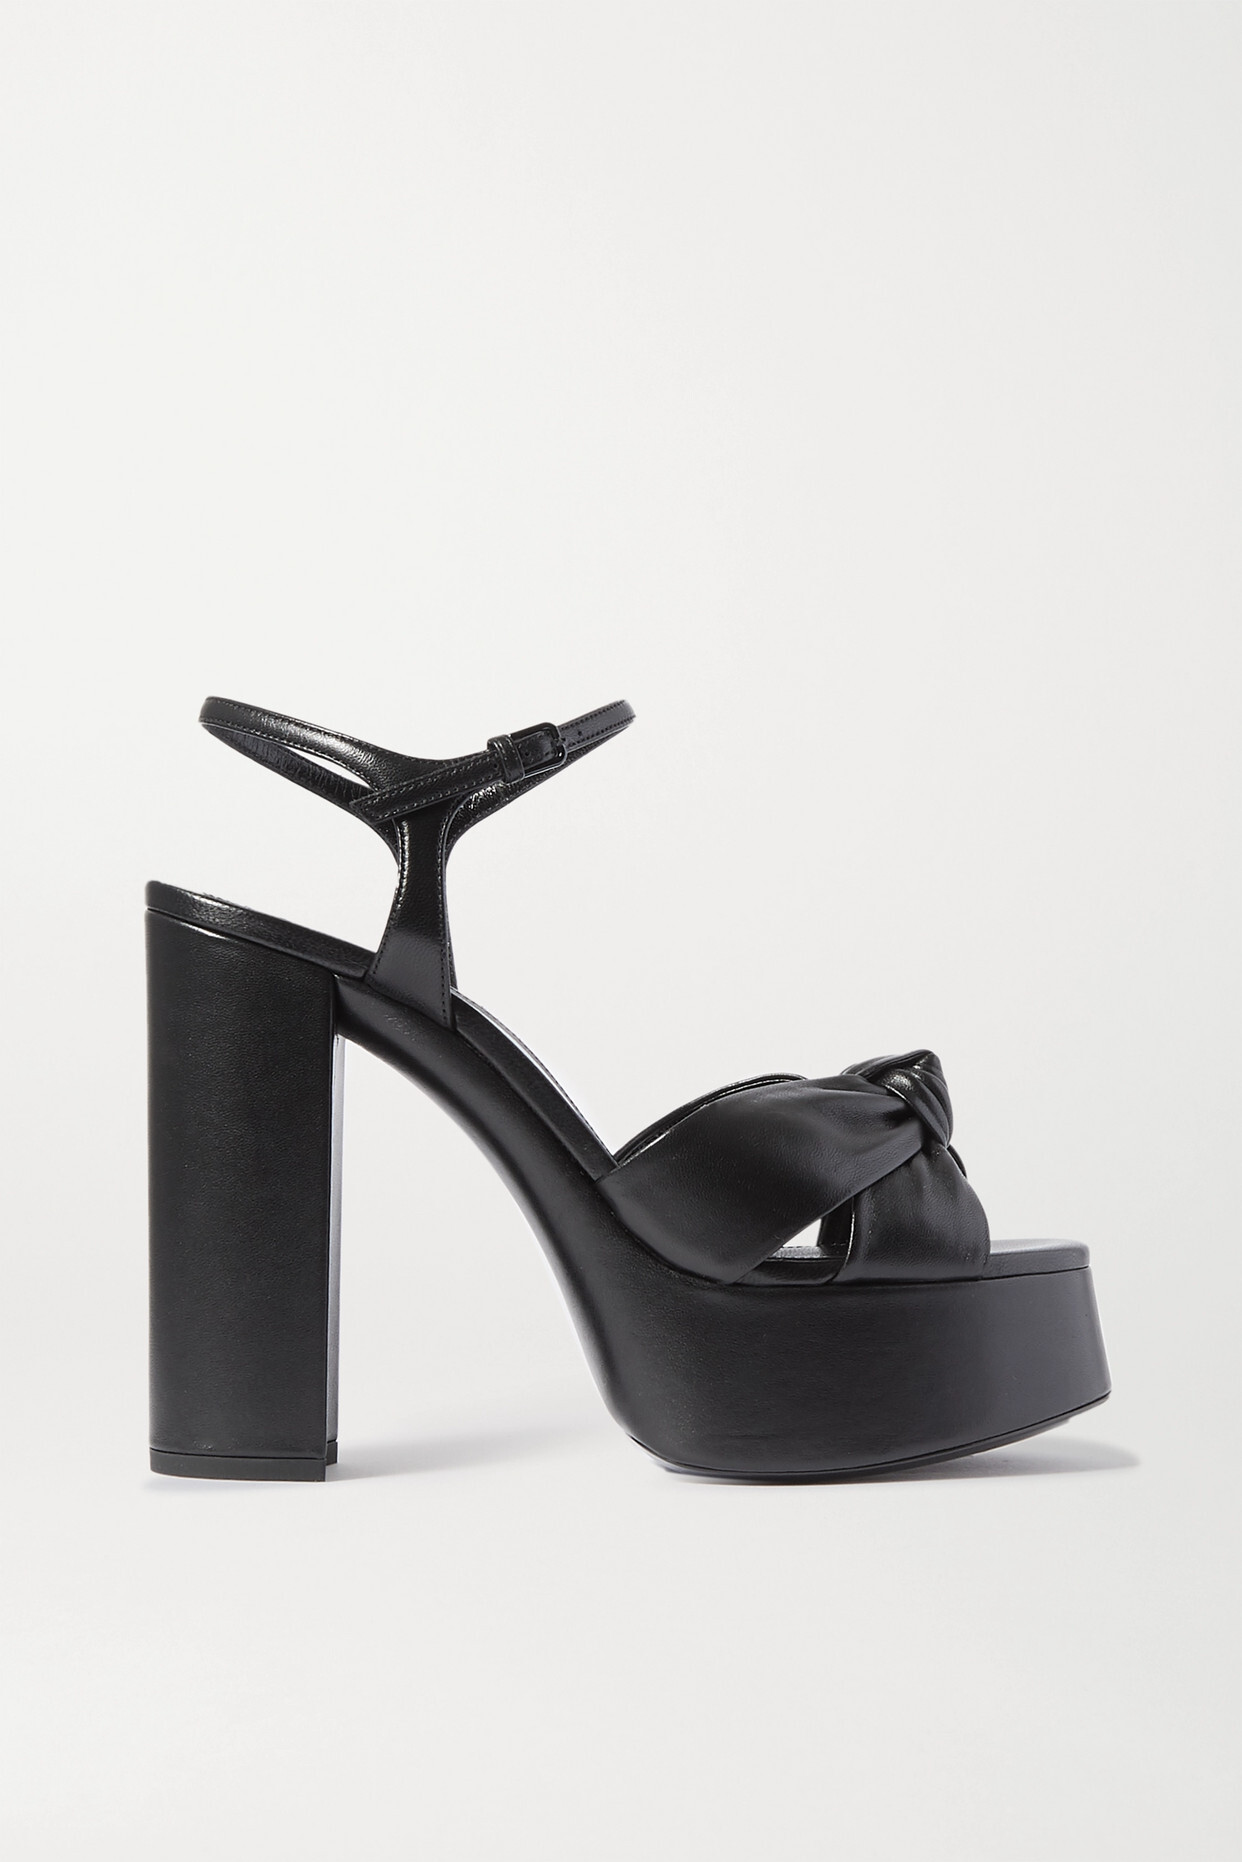 SAINT LAURENT - Bianca Knotted Leather Platform Sandals - Black